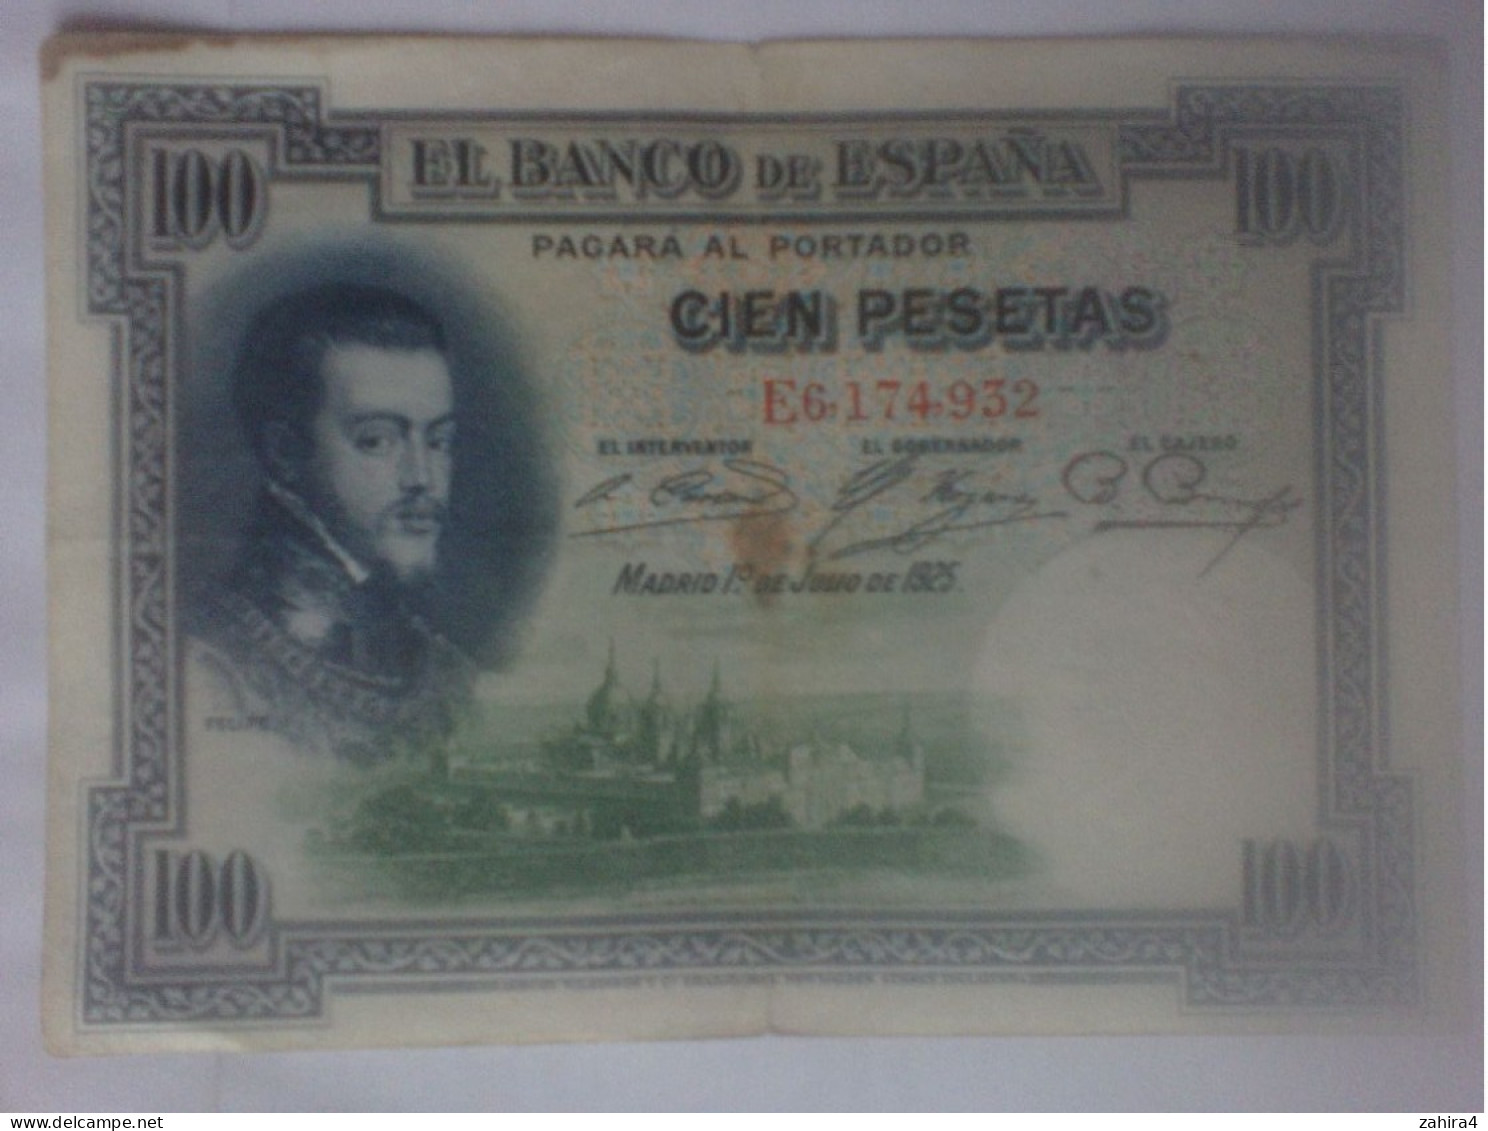 El Banco De Espana 100 Pesetas - Felipe II - E6,174,932 - 100 Pesetas